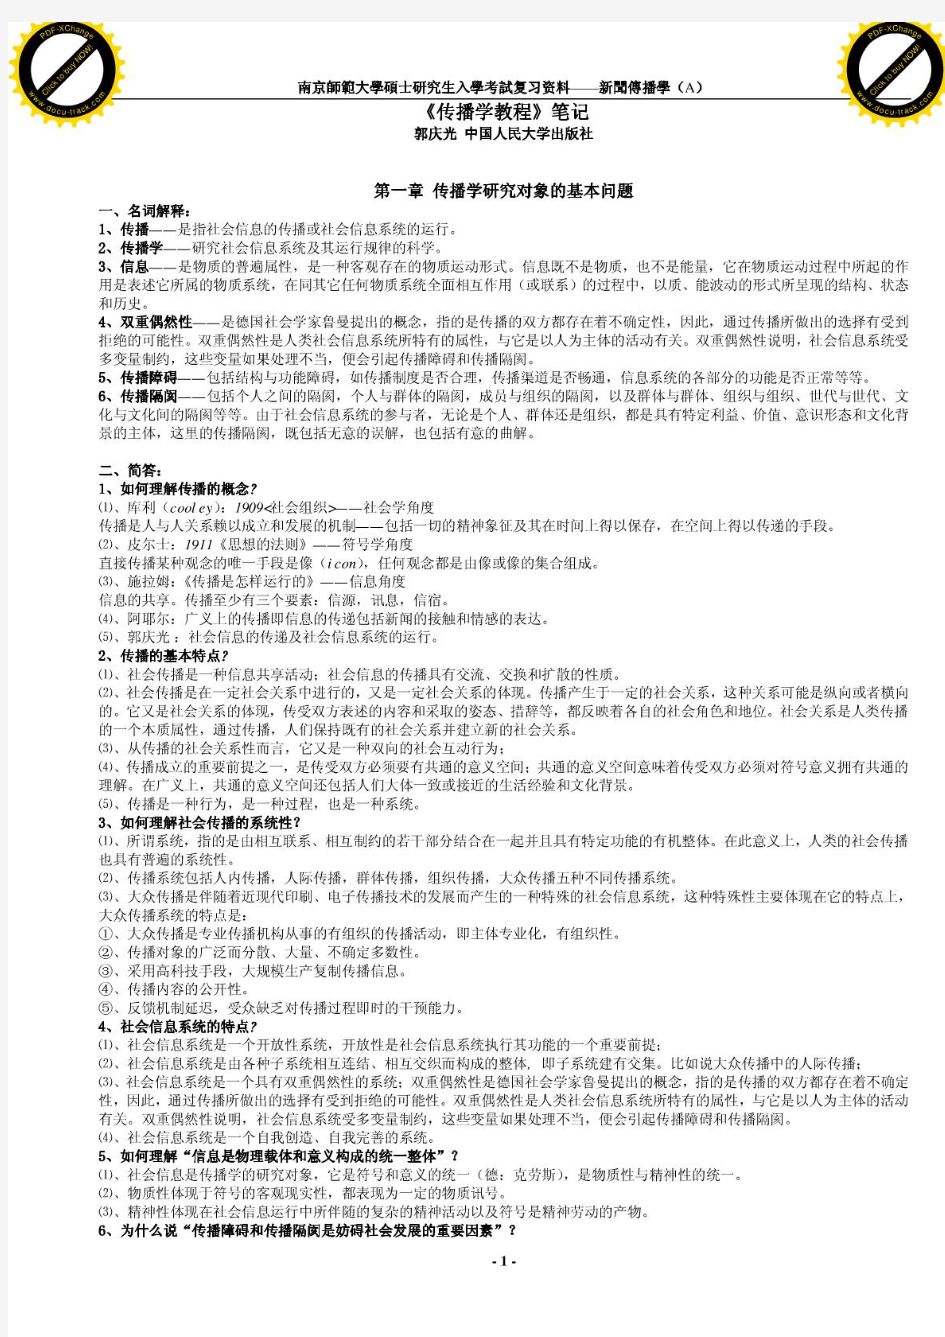 郭庆光中国人民大学出版社版传播学教程笔记